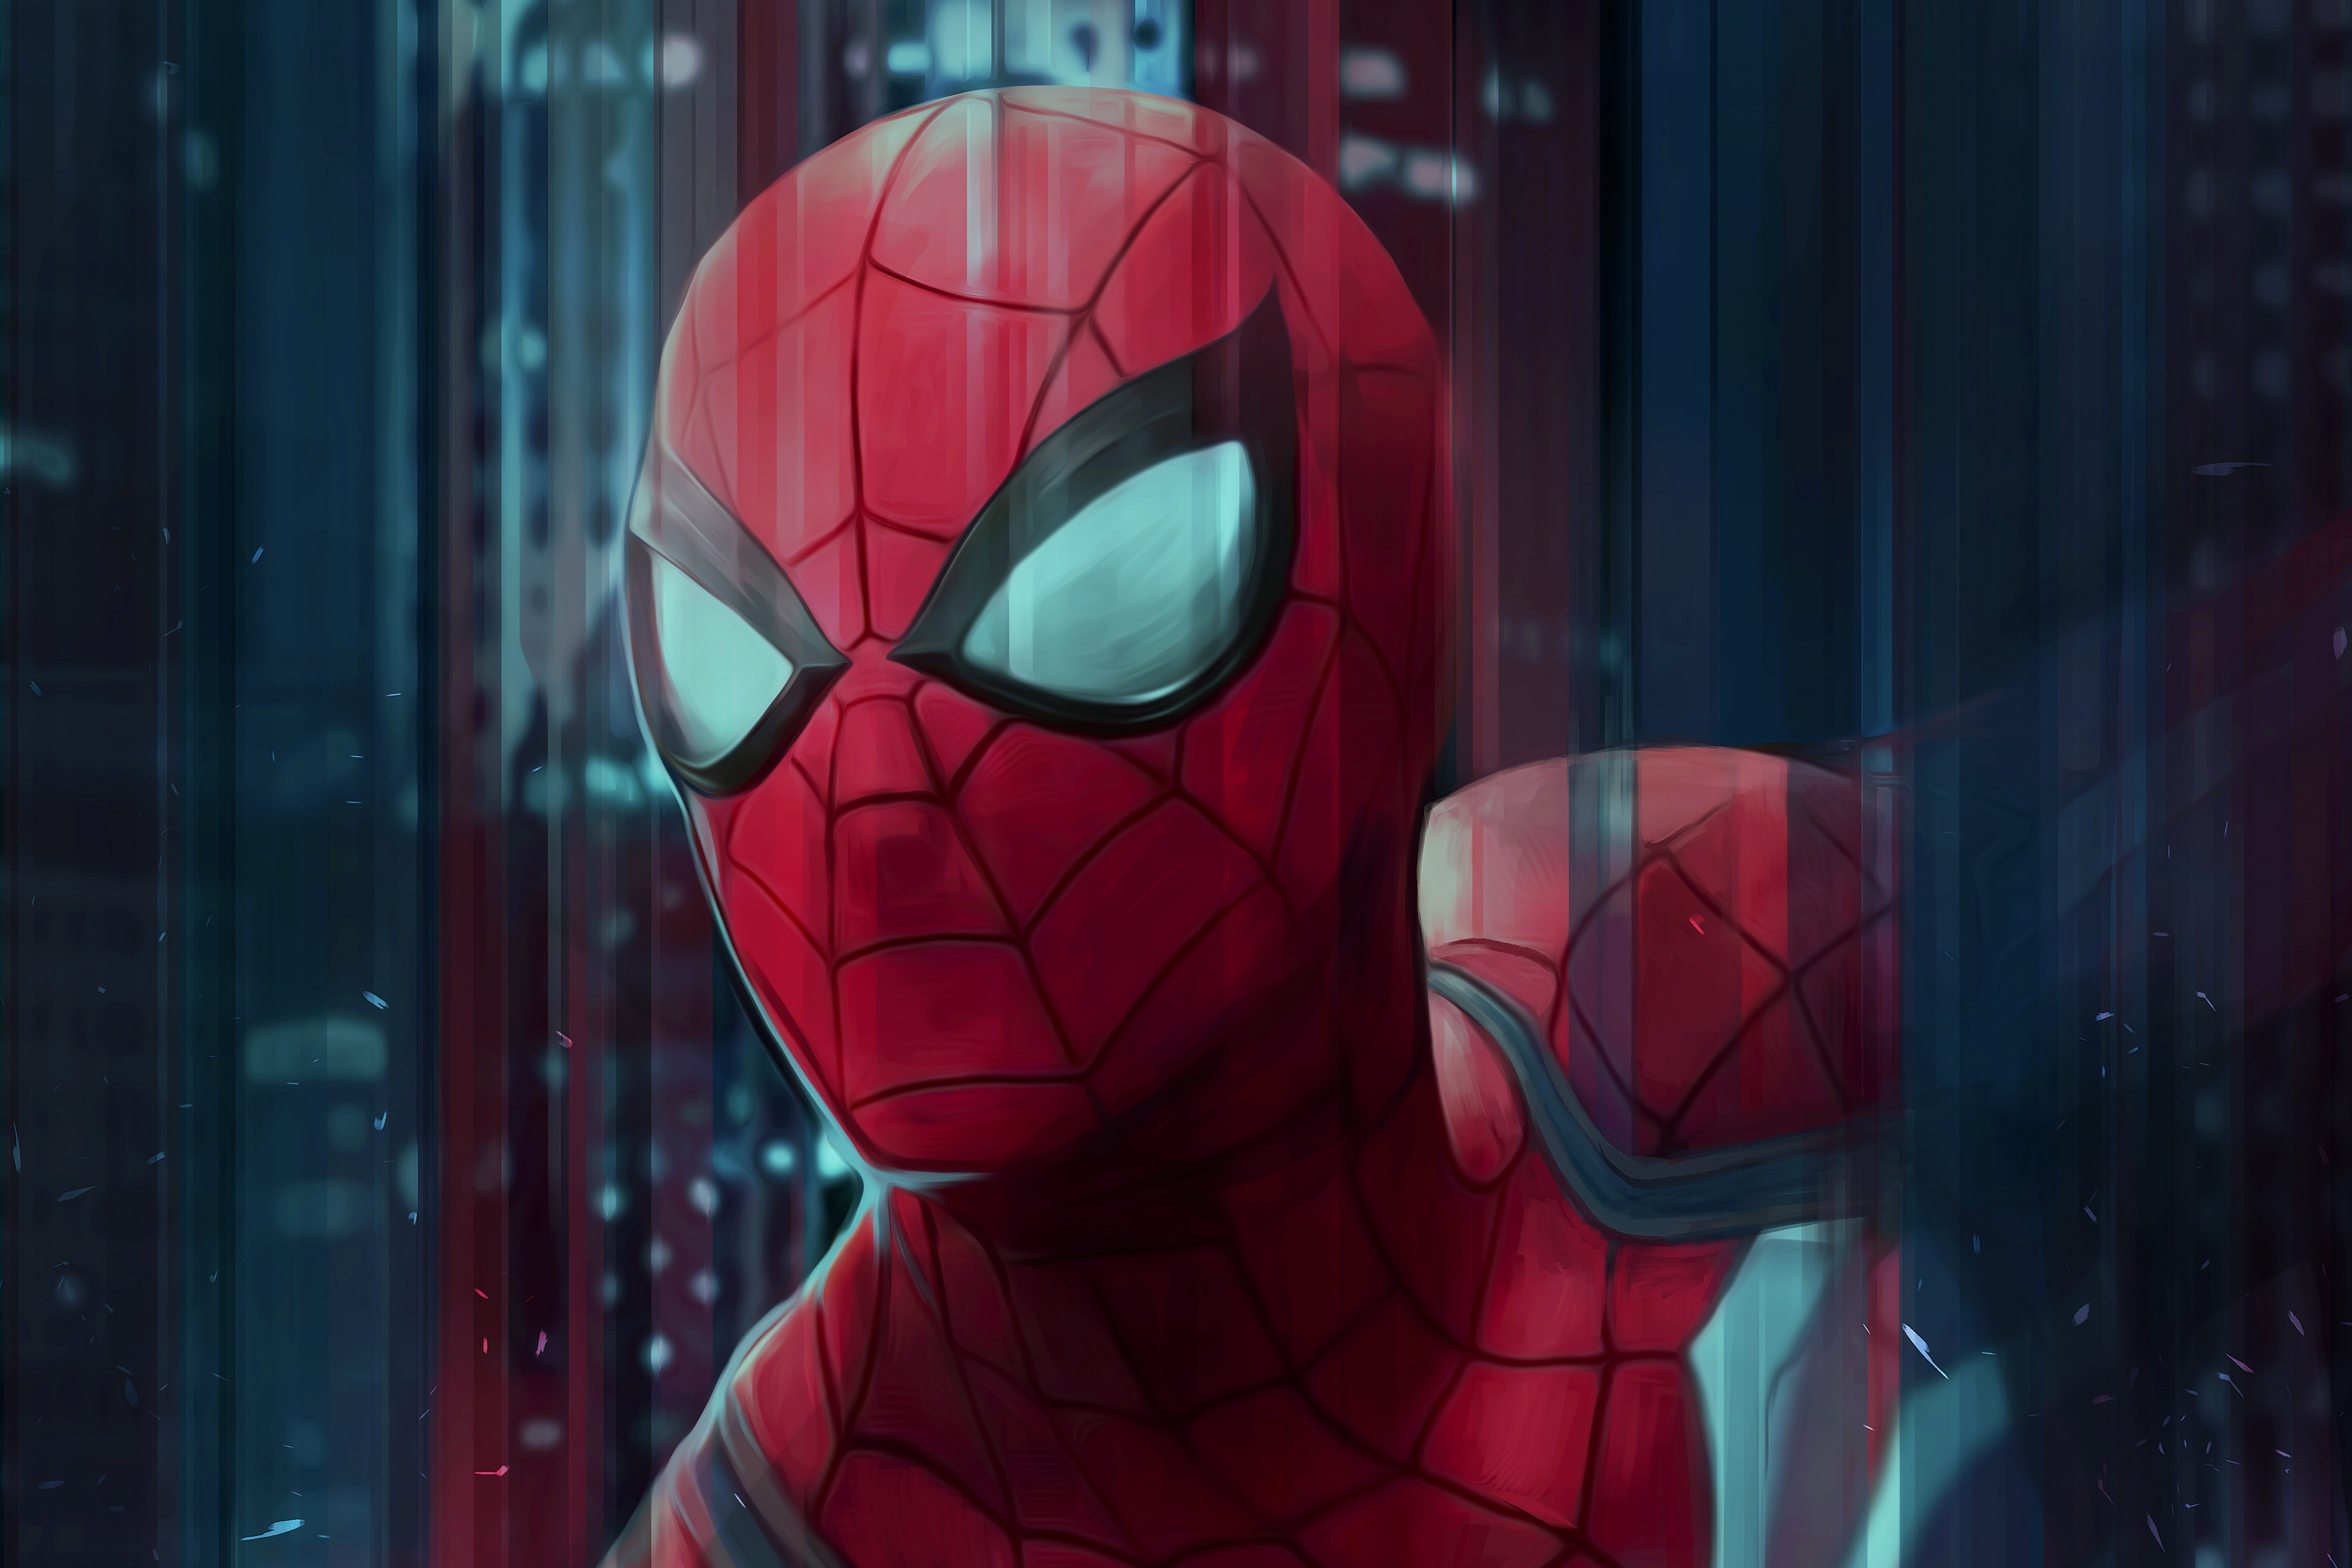 Spiderman Digital Art 4k, HD Superheroes, 4k Wallpapers, Images